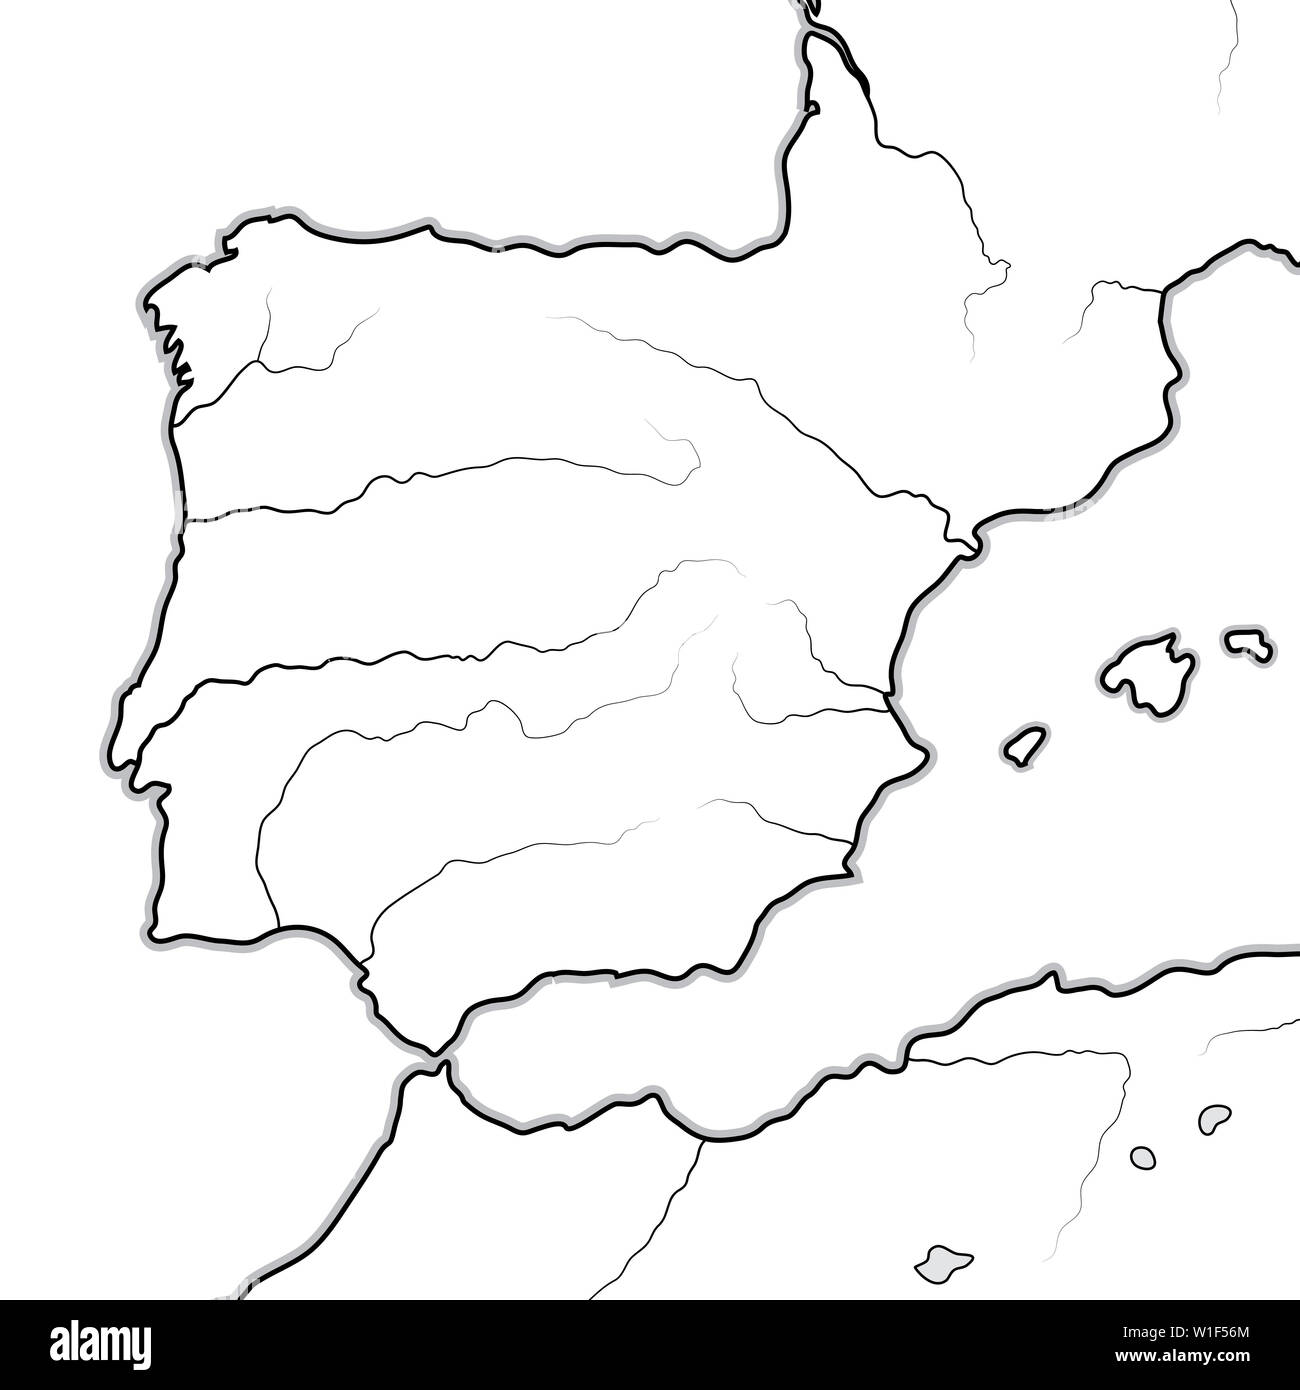 Carte de la terres espagnoles : Espagne, Portugal, Iberia, la Galice, la Catalogne, Valence, l'Andalousie, León, Aragon et Castille, Navarre, Asturies, les Pyrénées. Banque D'Images